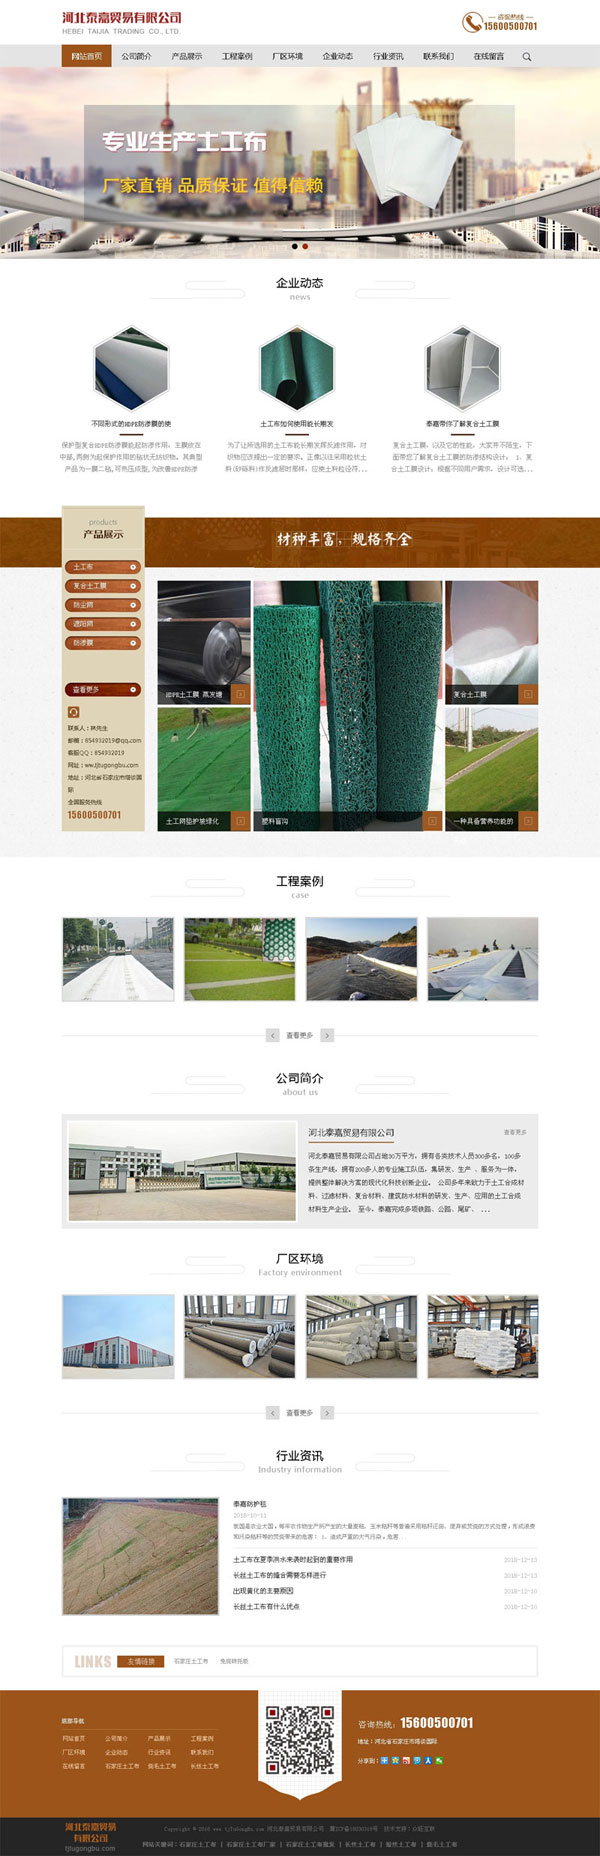 土工布网站建设,石家庄建筑材料上网,河北建材网站制作,建材网站设计